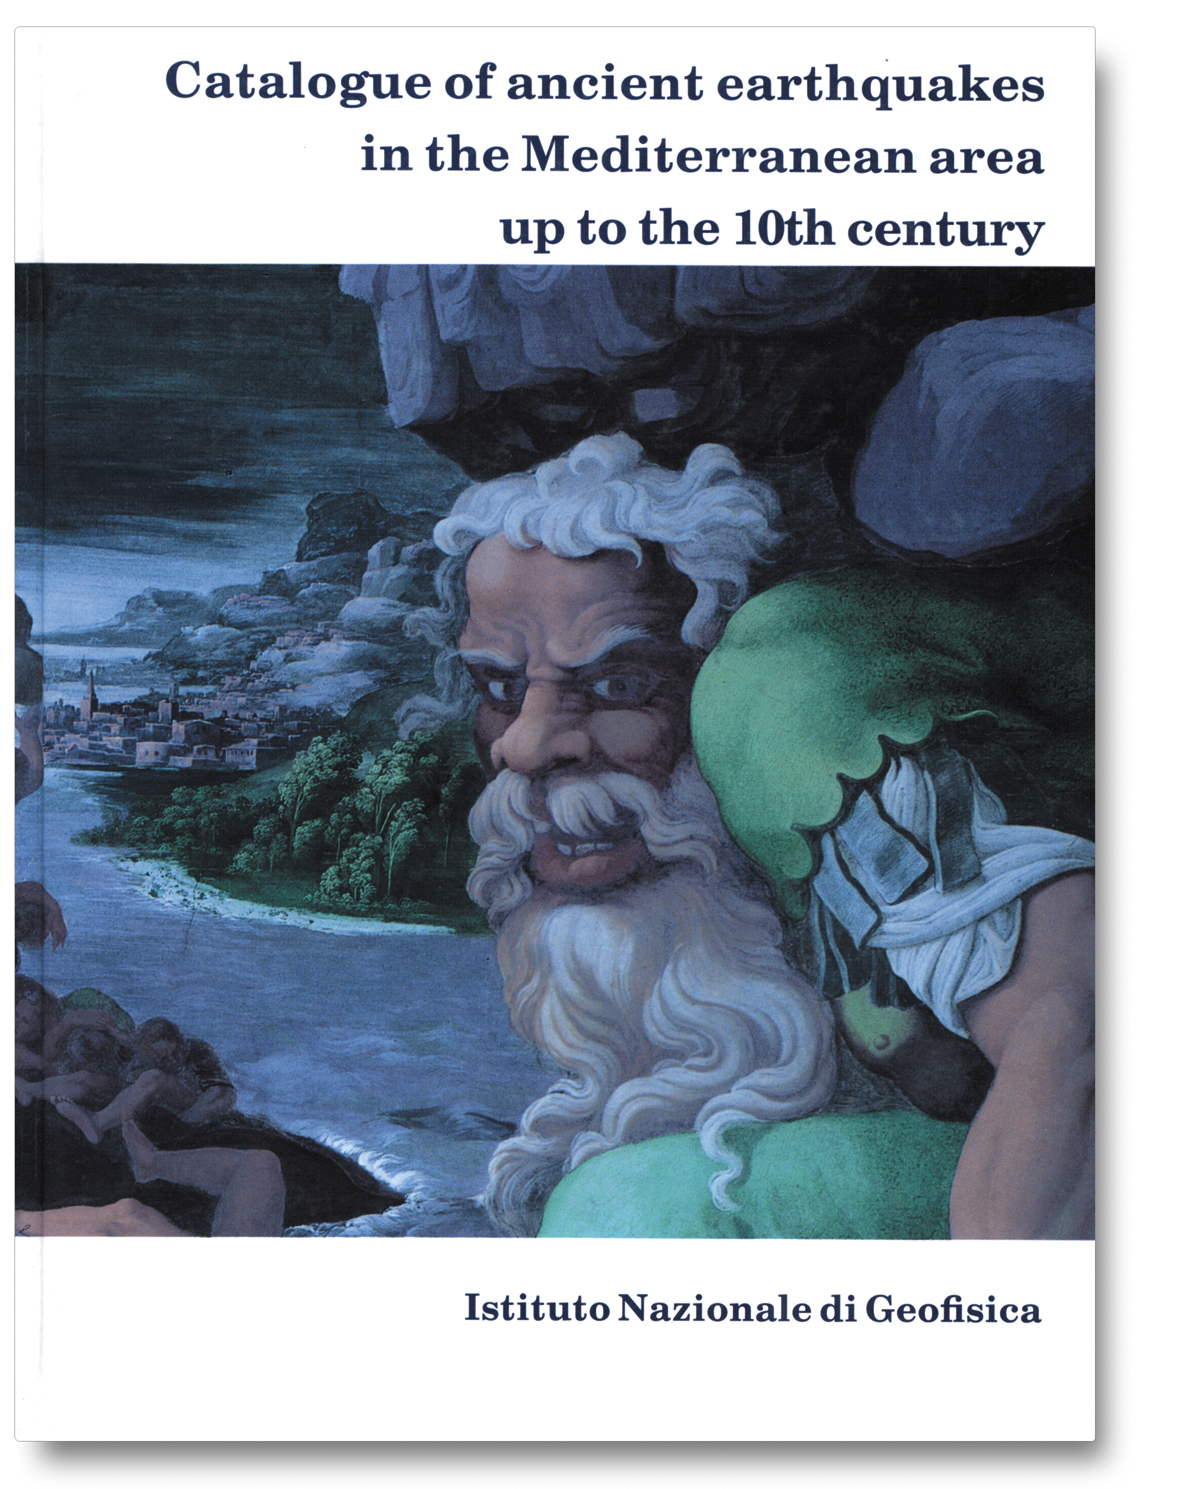 Emanuela Guidoboni, Alberto Comastri e Giusto Traina - Catalogue of Ancient Earthquakes in the Mediterranean Area up to the 10th Century (1994)